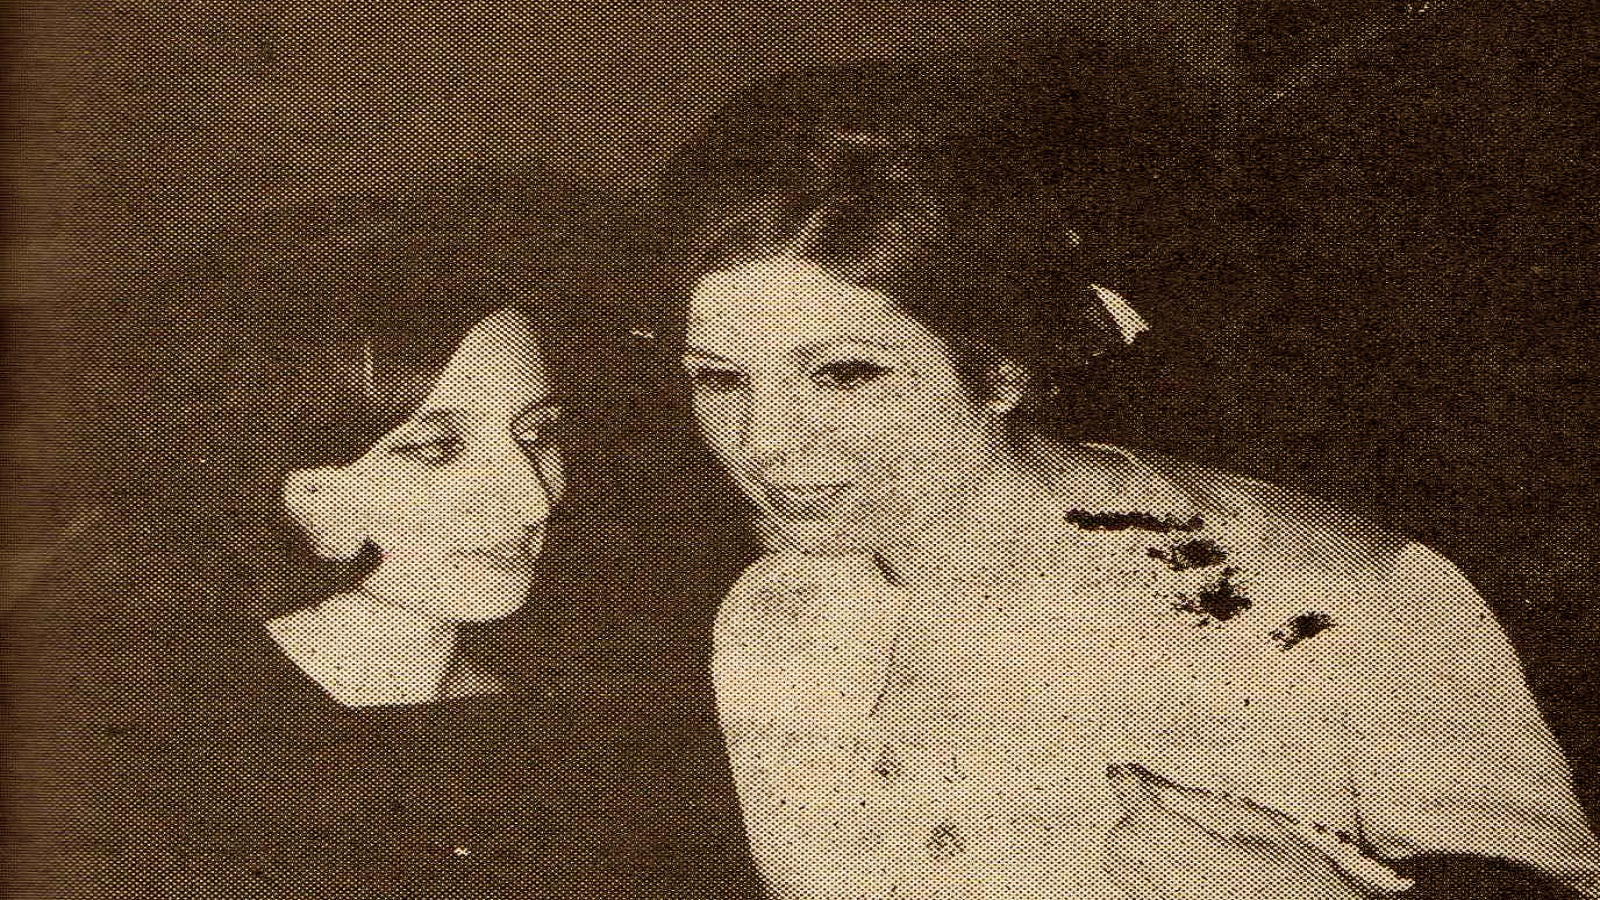 مع فيروز، 1964.